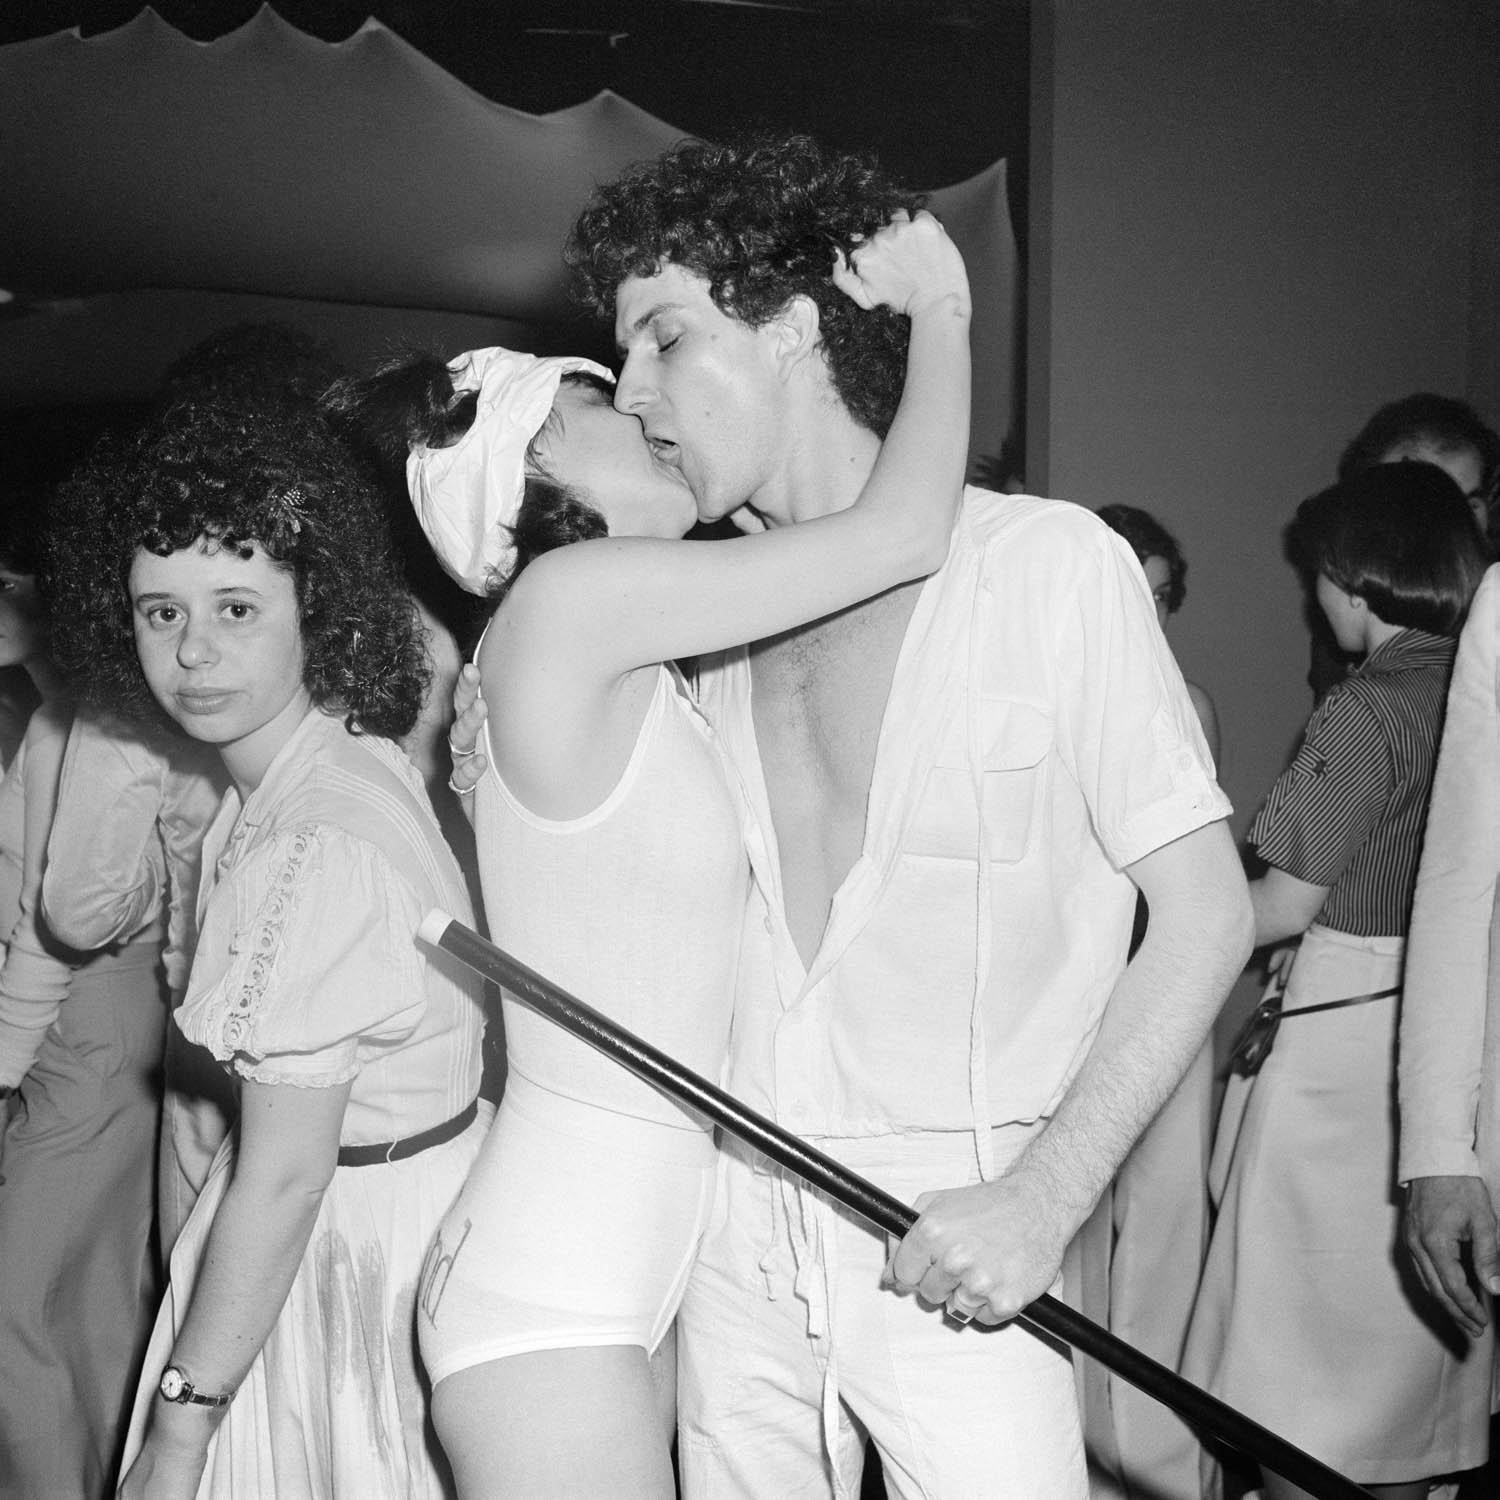 White Party, Les Mouches, NY, NY April 1978